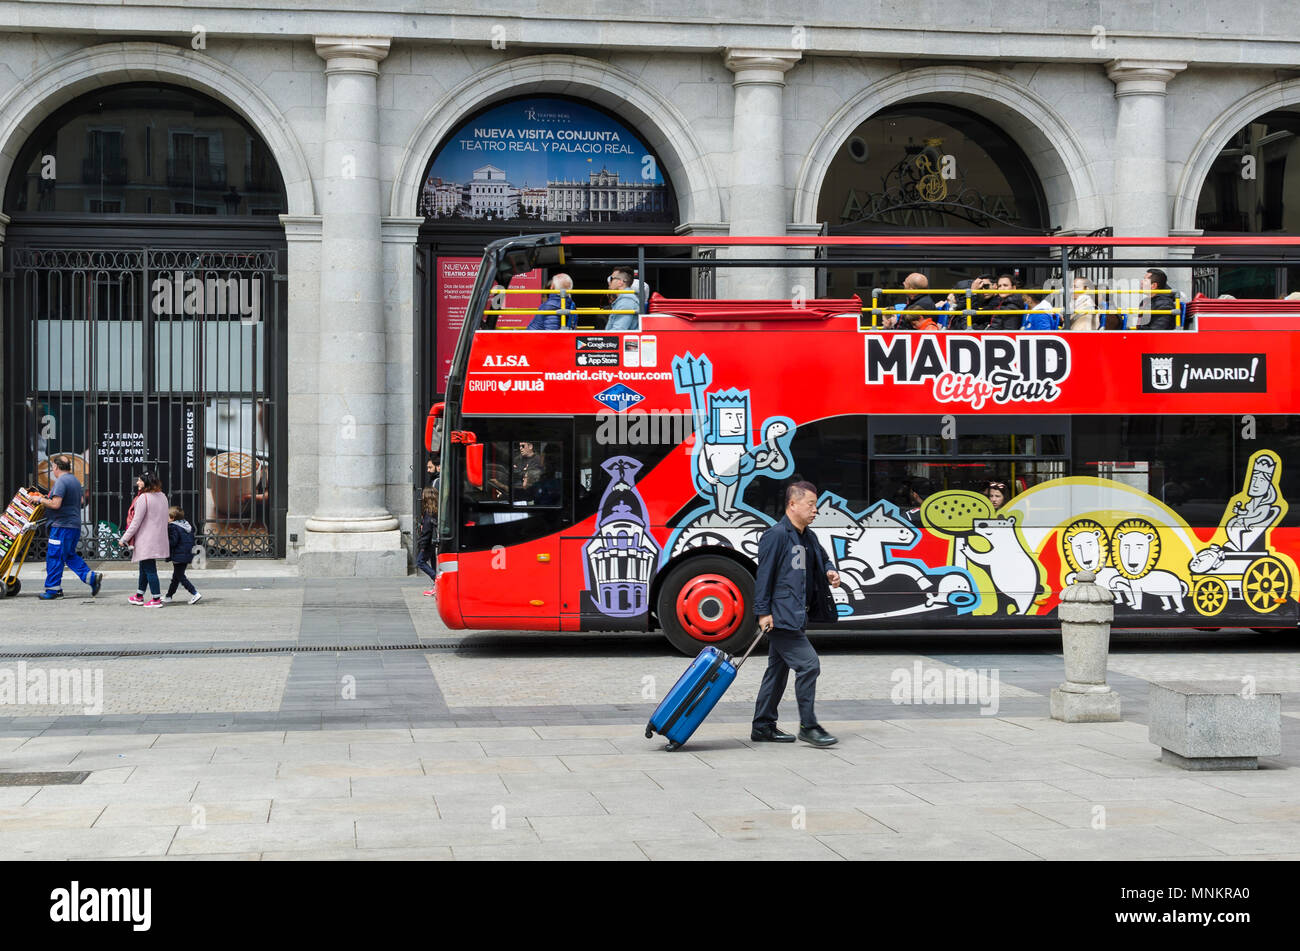 A red touristic bus in Plaza de la Ópera, Madrid city, Spain. Stock Photo